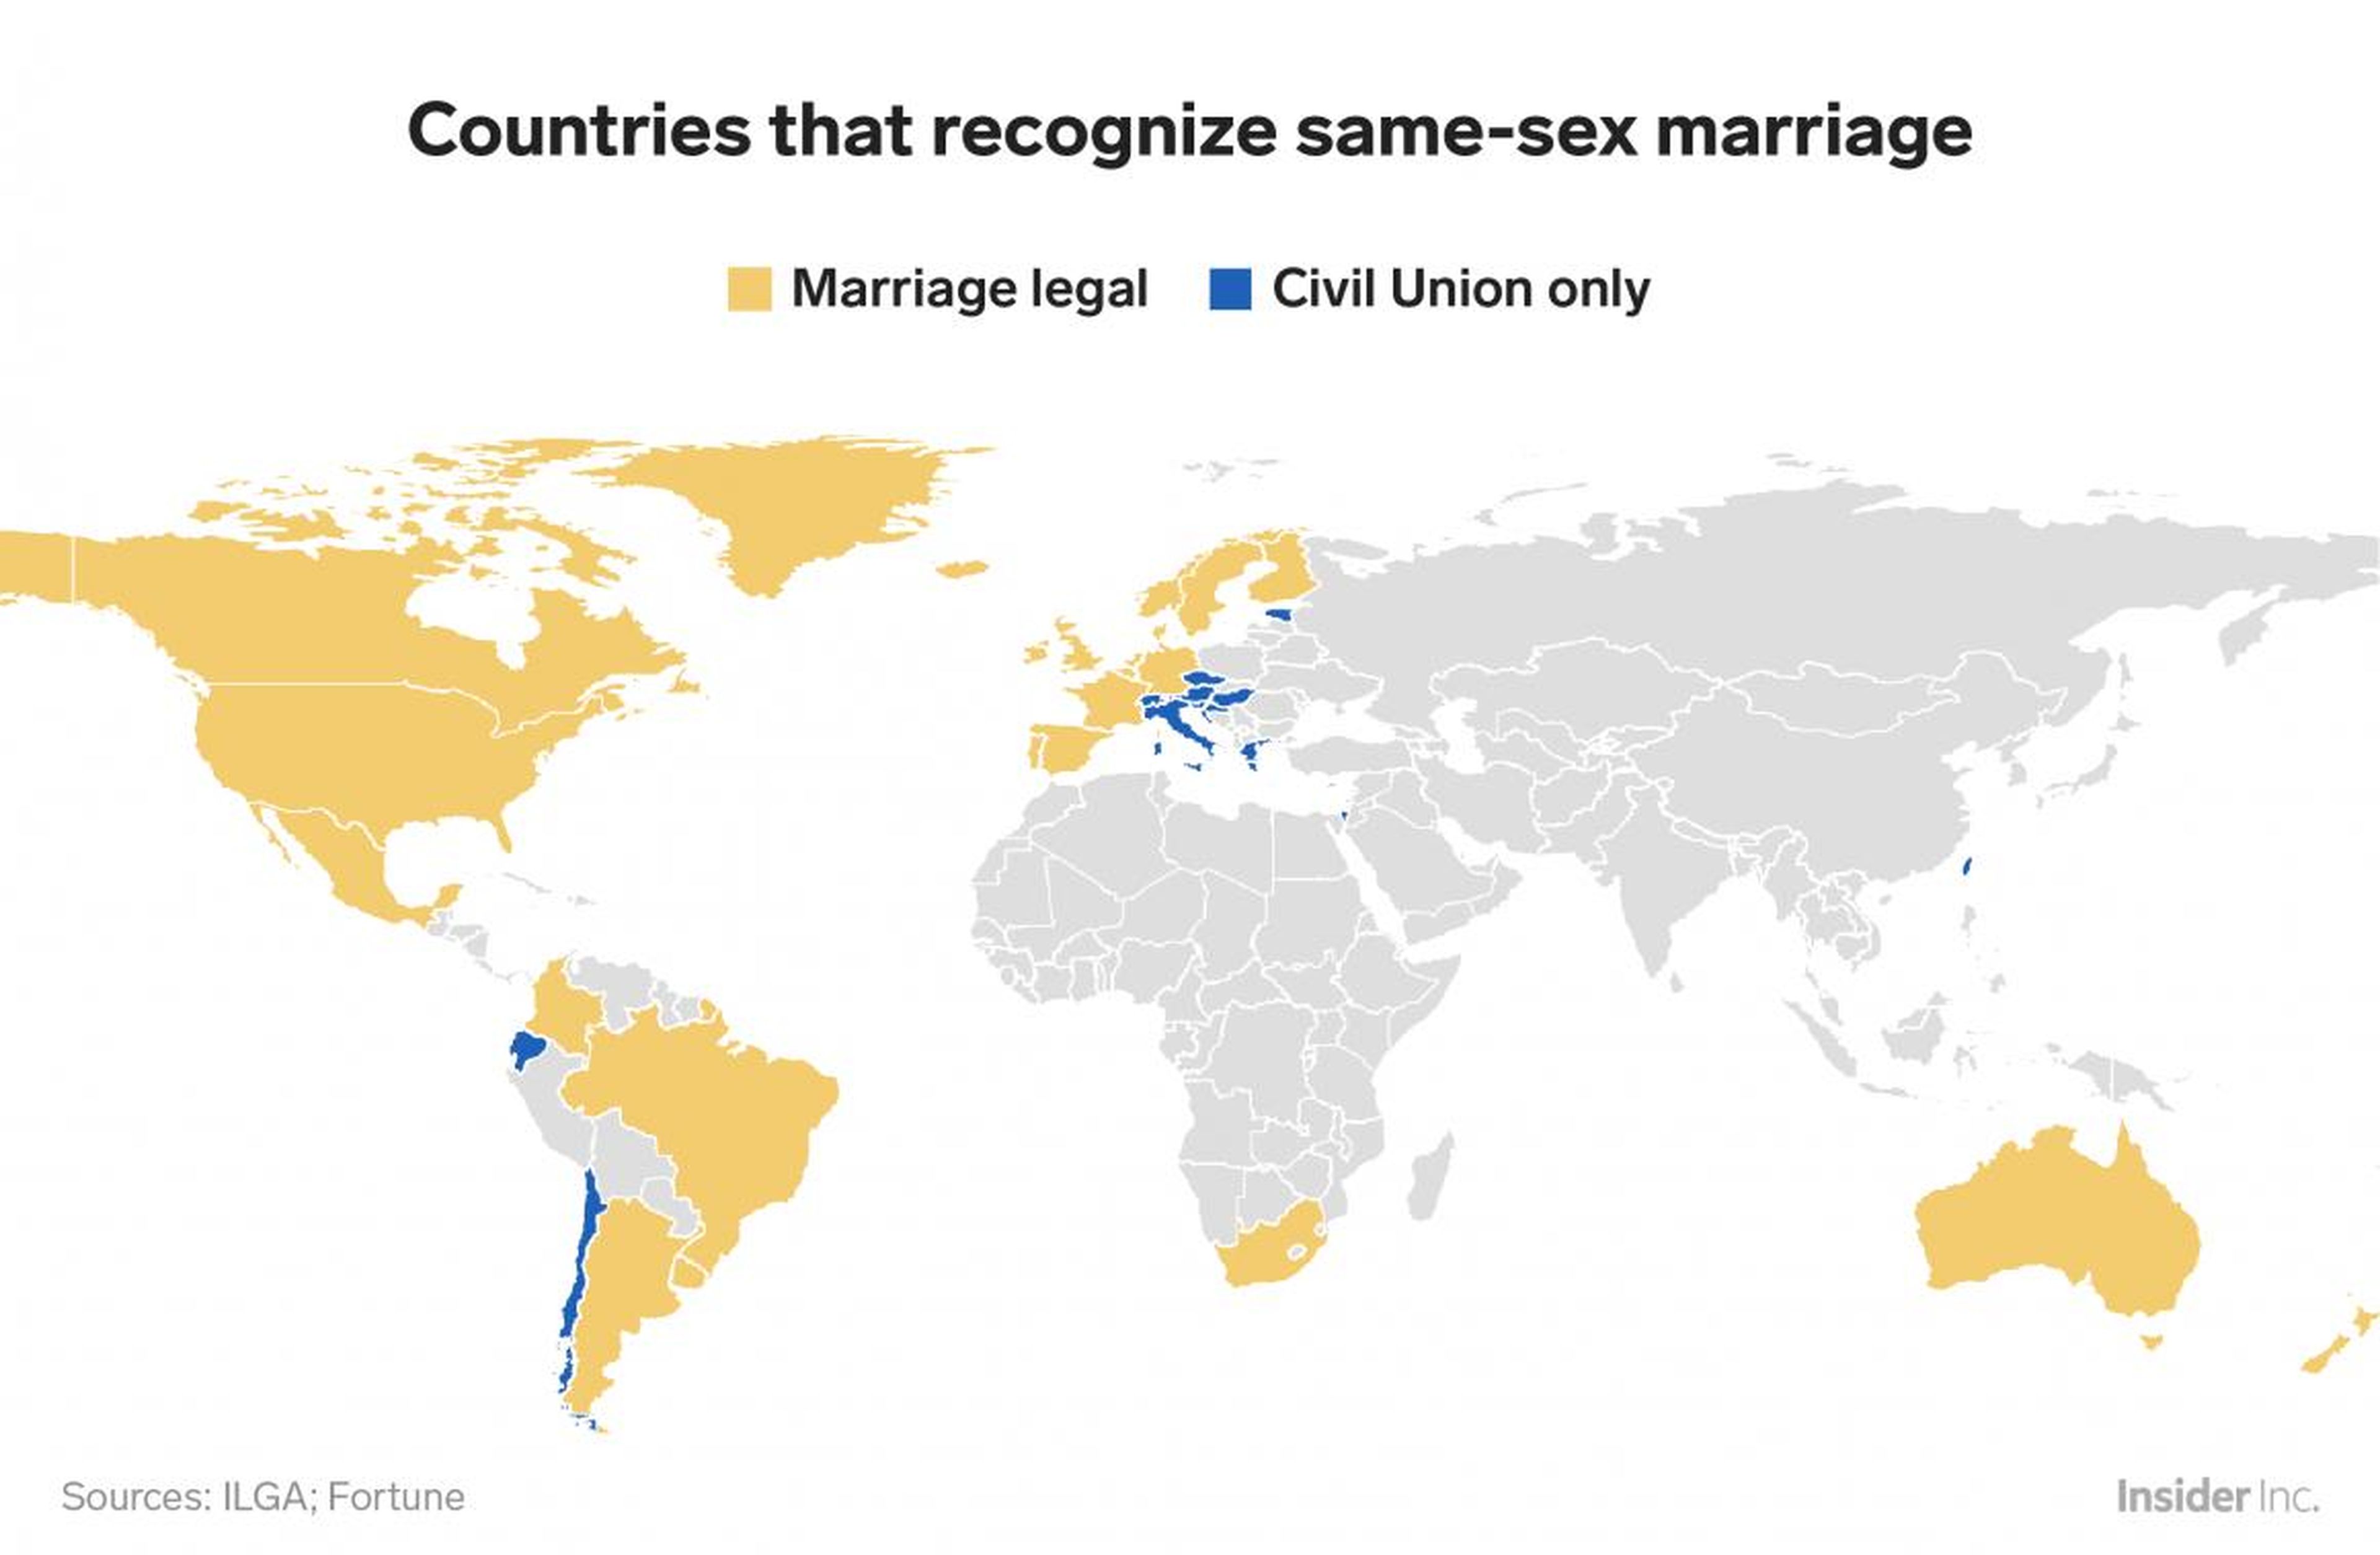 Solo alrededor del 13% de los países miembros de la ONU han legalizado el matrimonio homosexual.